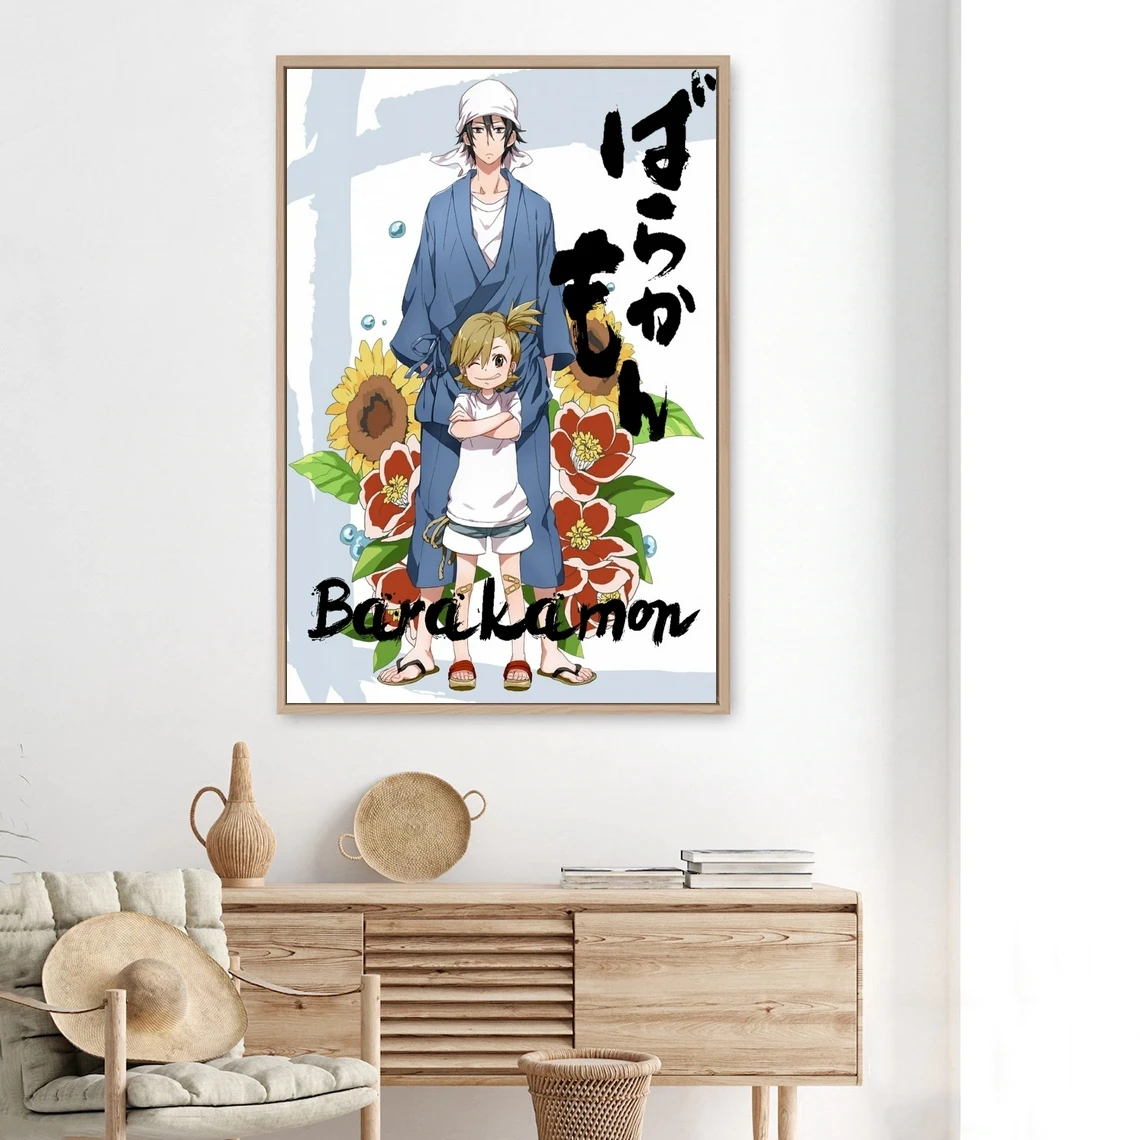 

Аниме постеры Barakamon, кинотеатр аниме ТВ сериал, печать на холсте, персонализированный кинопостер, горячие новые поклонники в Японии